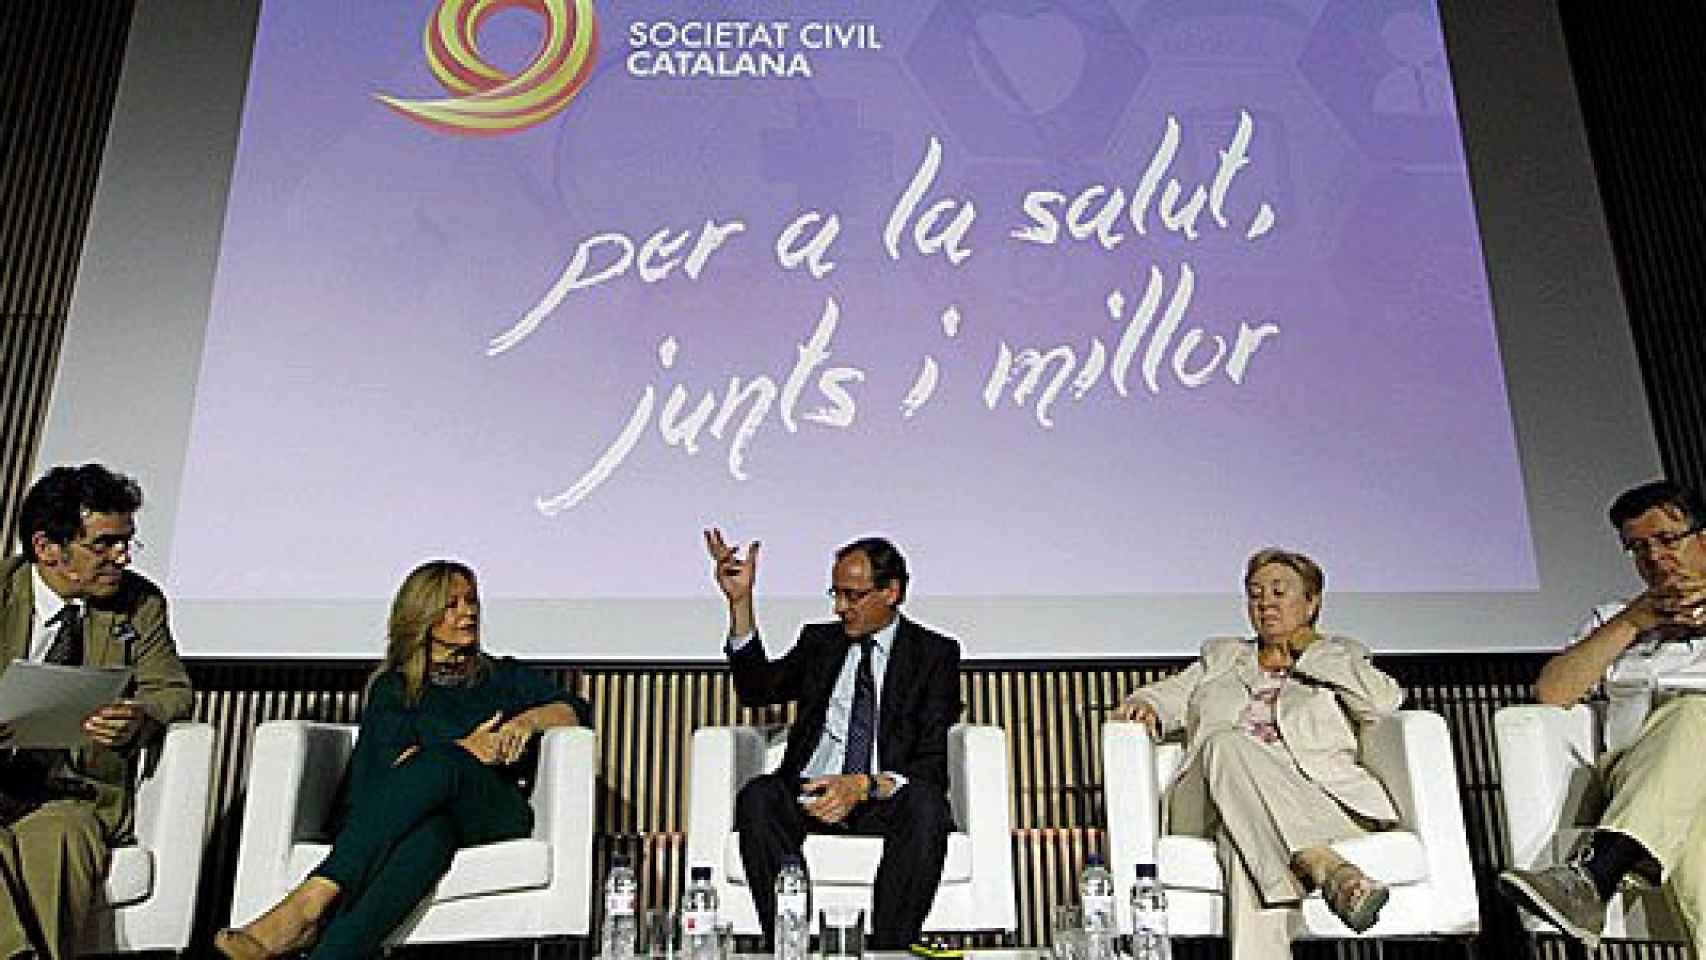 Álex Ramos, Trinidad Jiménez, Alfonso Alonso, Carme Pérez y Antoni Sitges-Serra en el evento de SCC